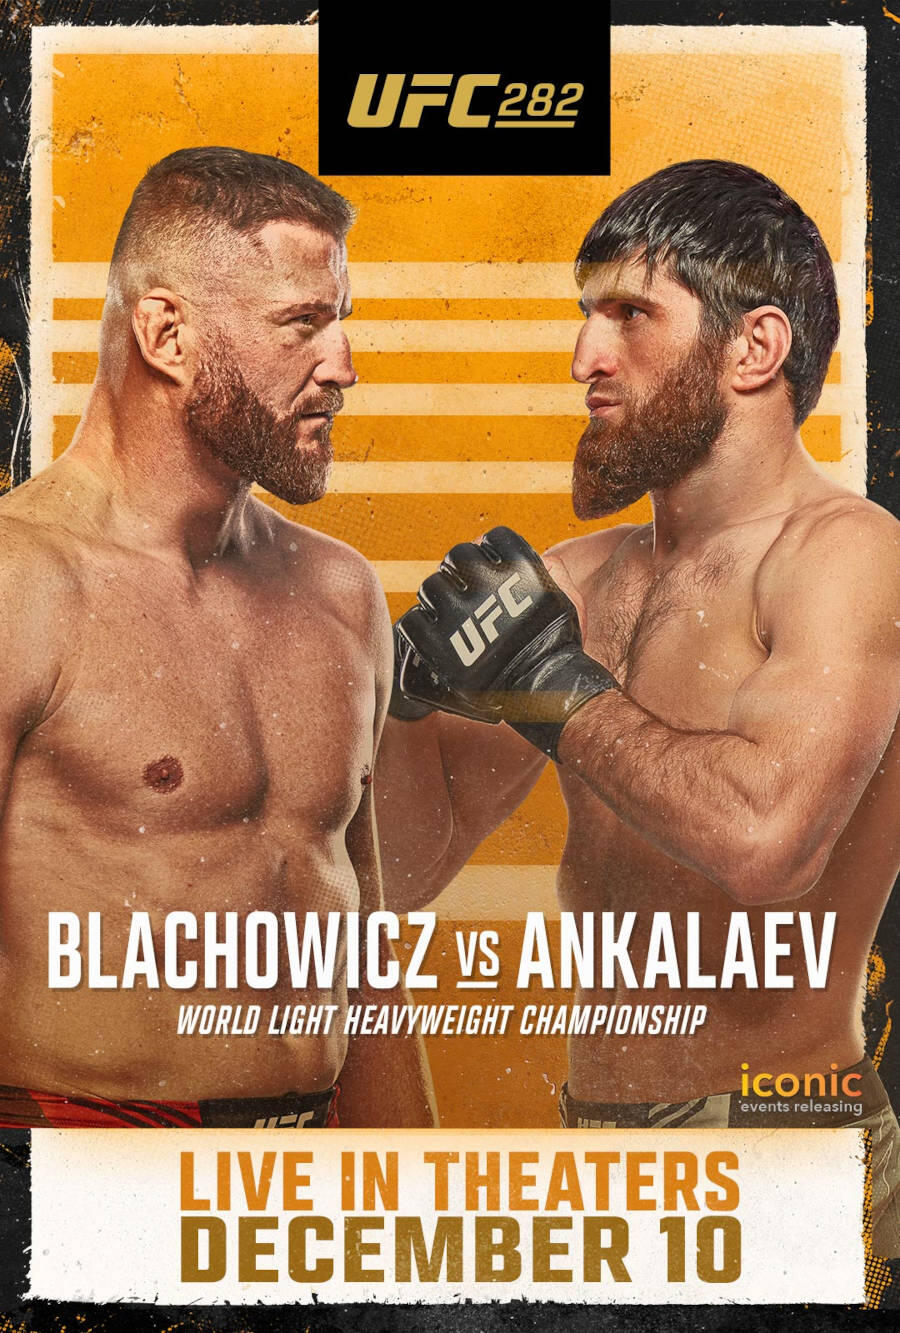 UFC 282 Blachowicz vs